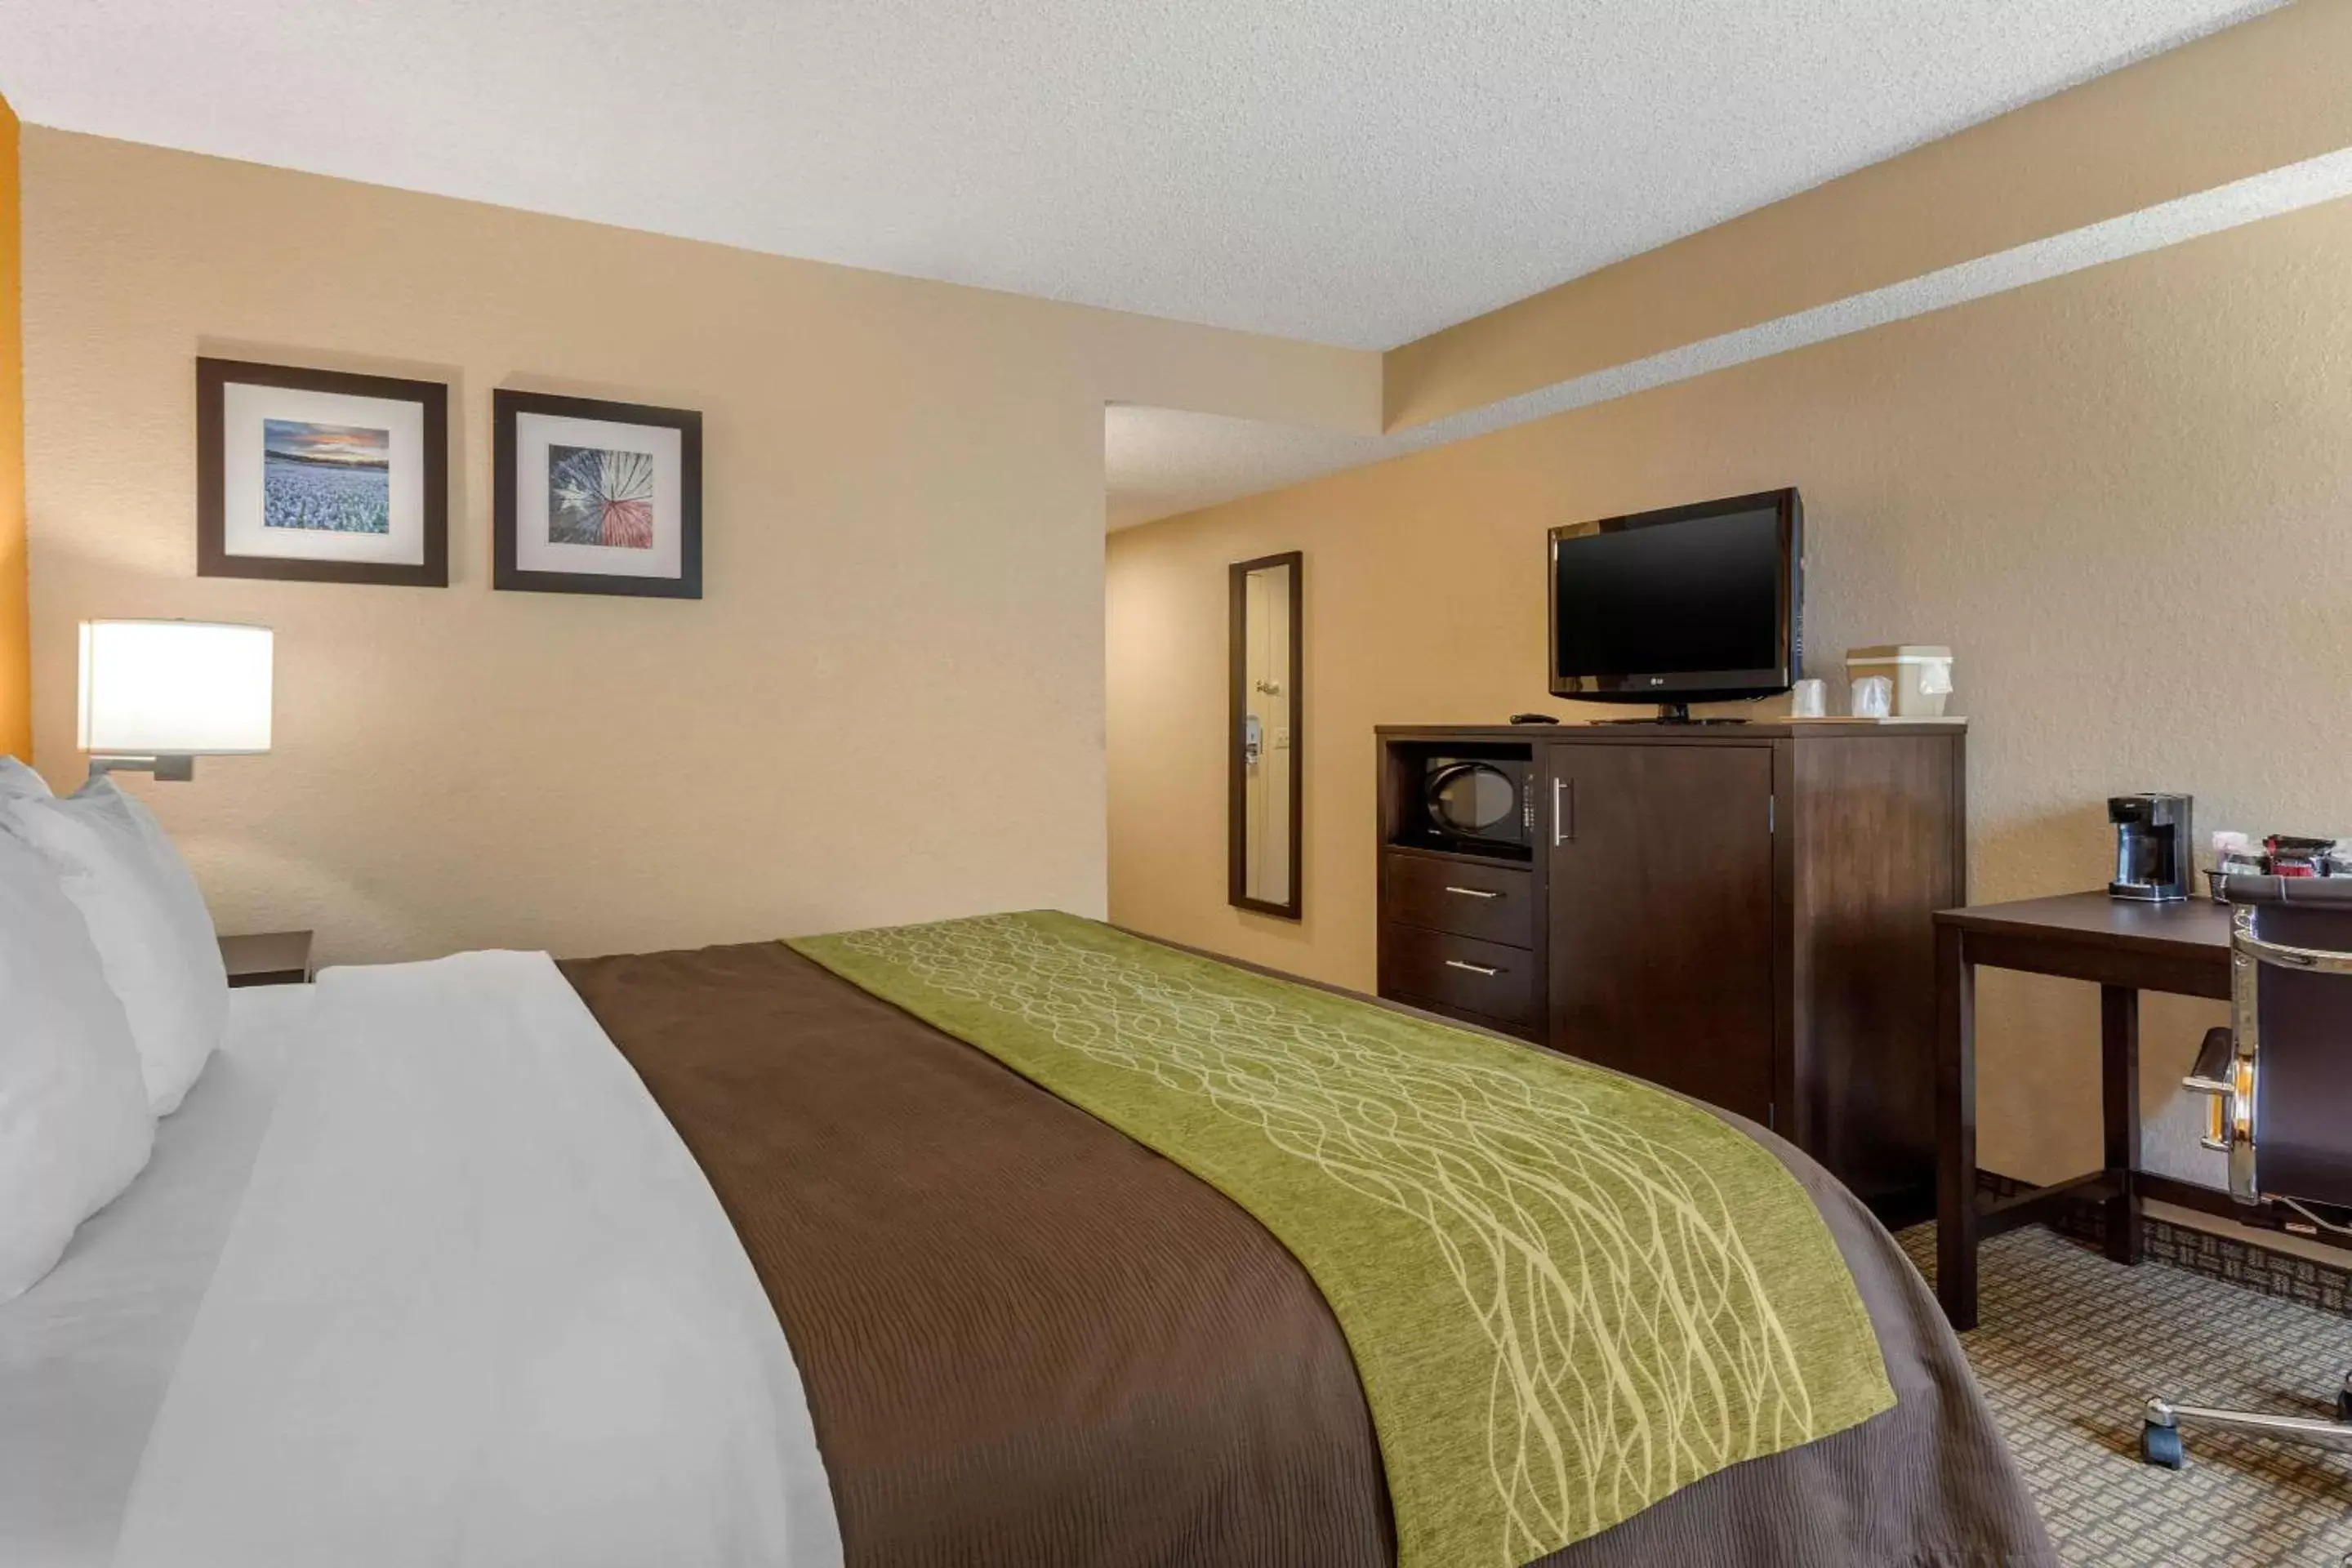 Bedroom, Bed in Comfort Inn 290/NW